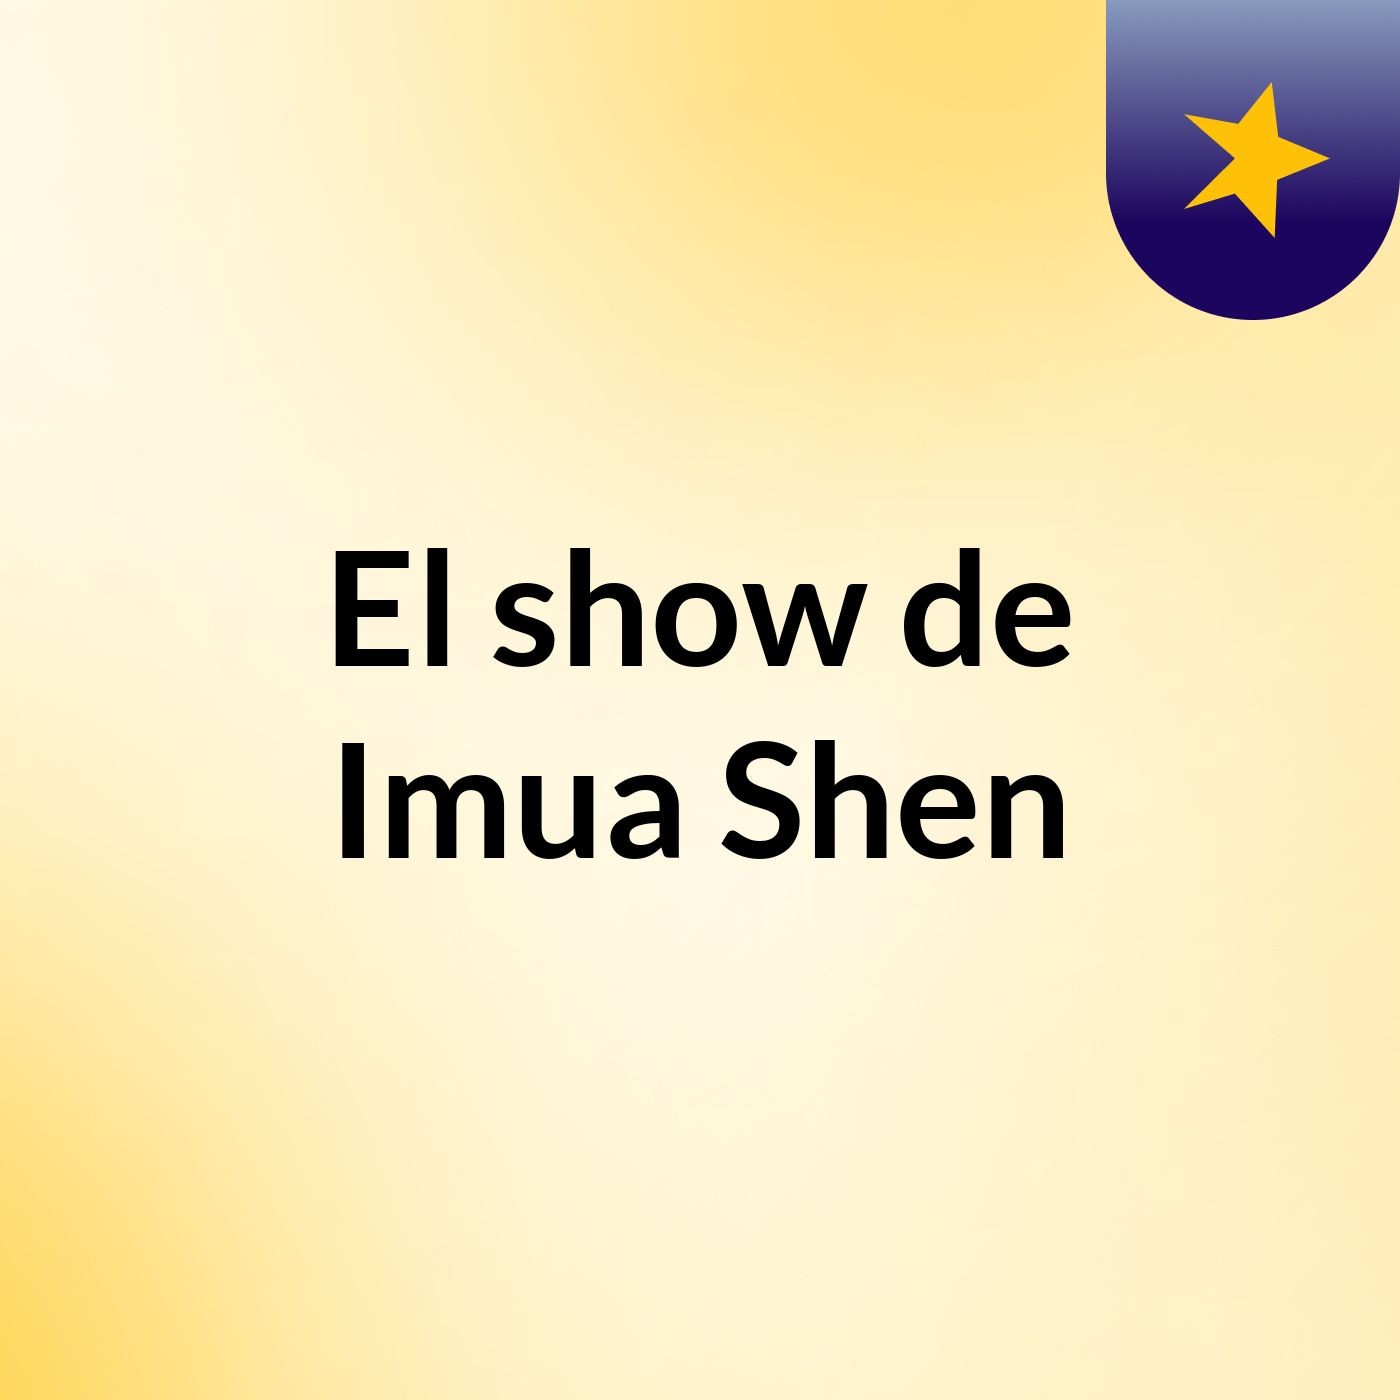 El show de Imua Shen